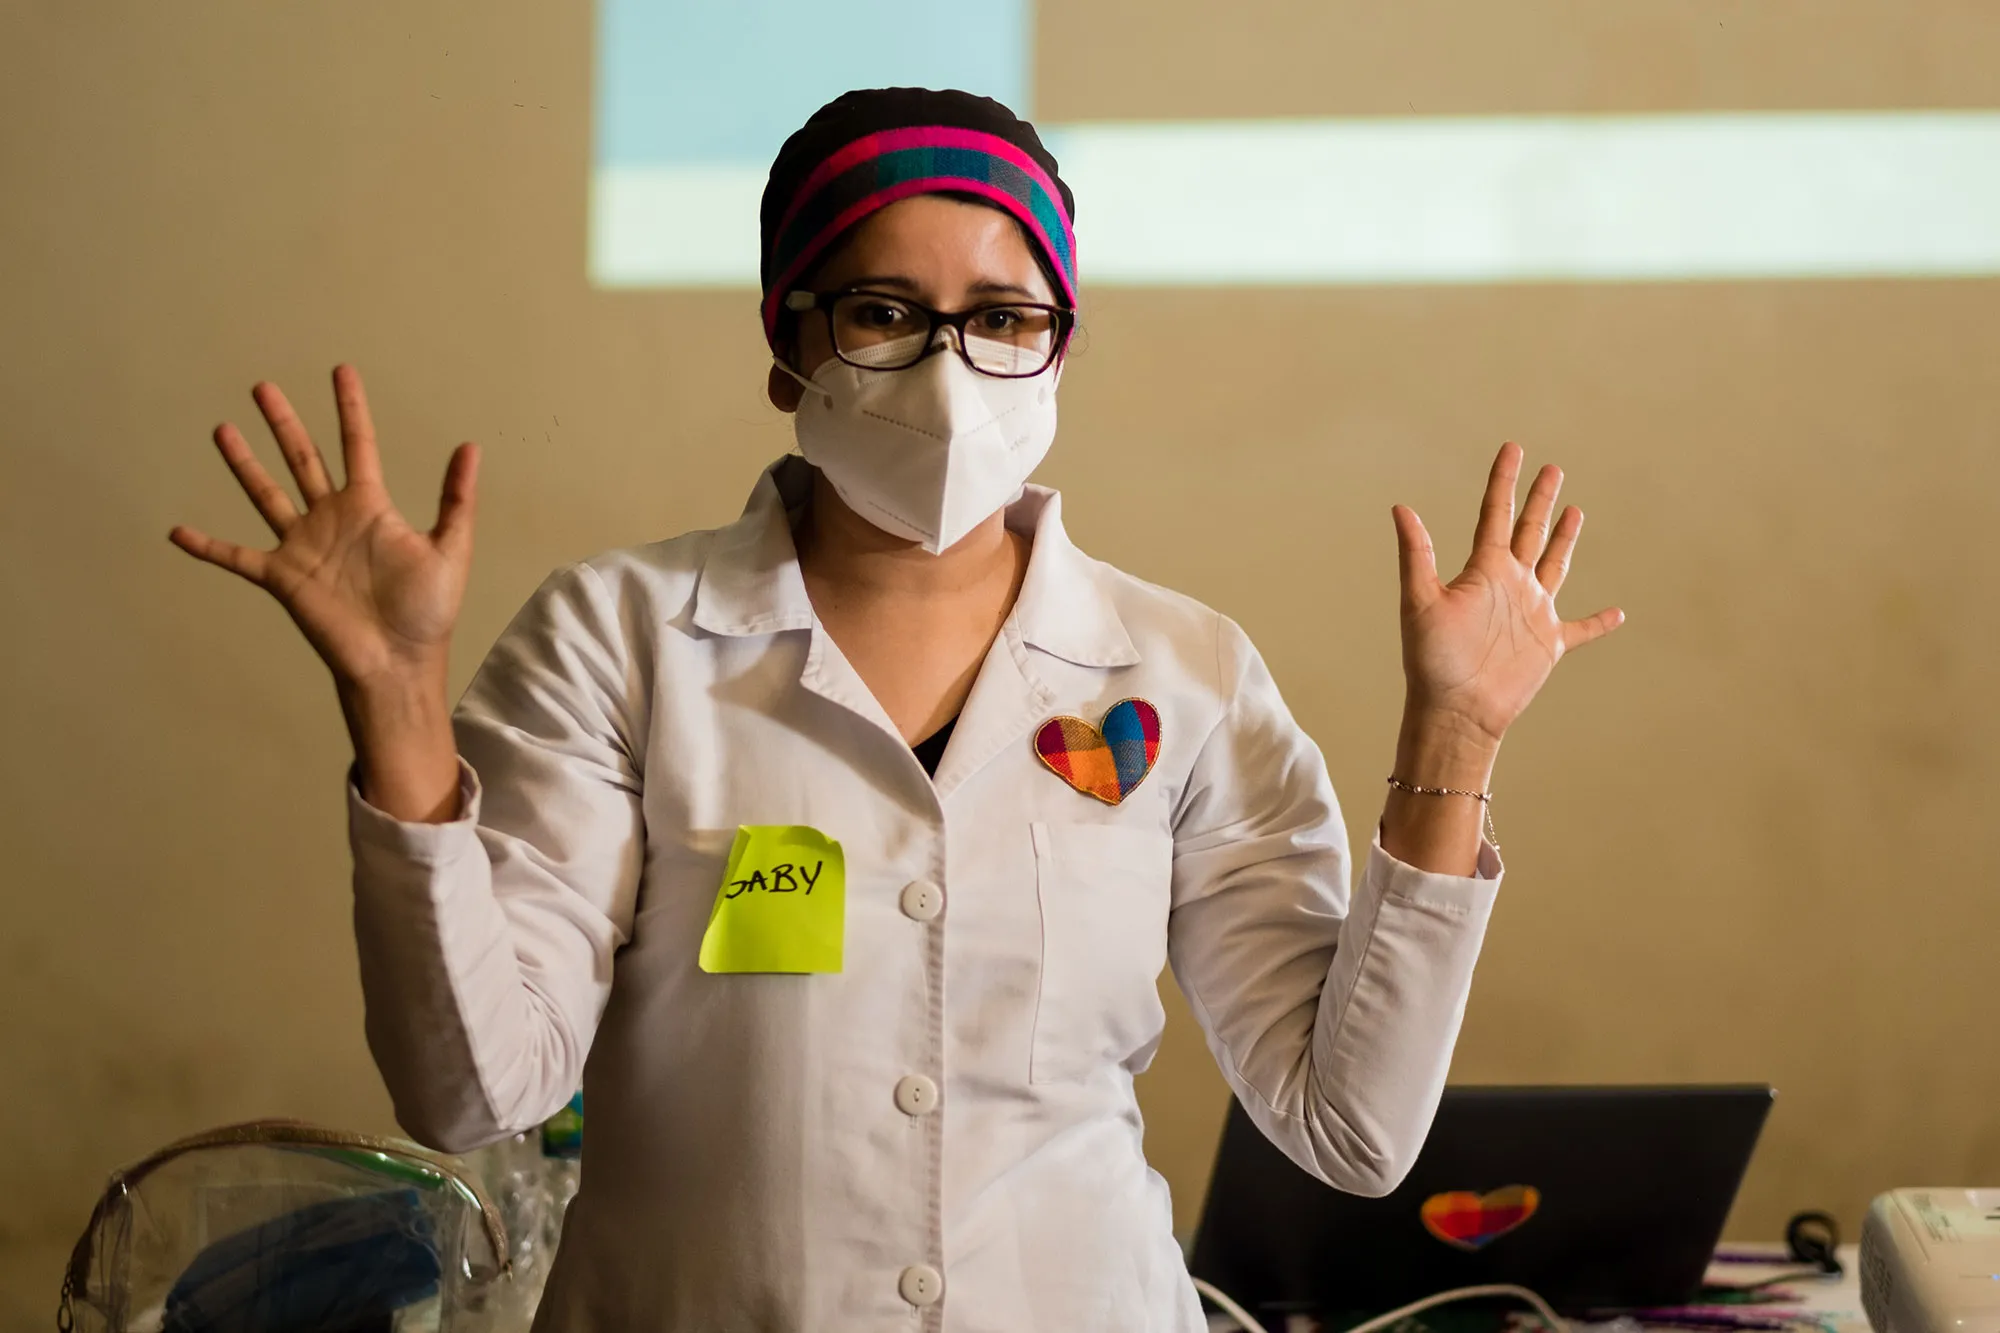 une femme en blouse de laboratoire et masque chirurgical parle avec ses mains en l'air.